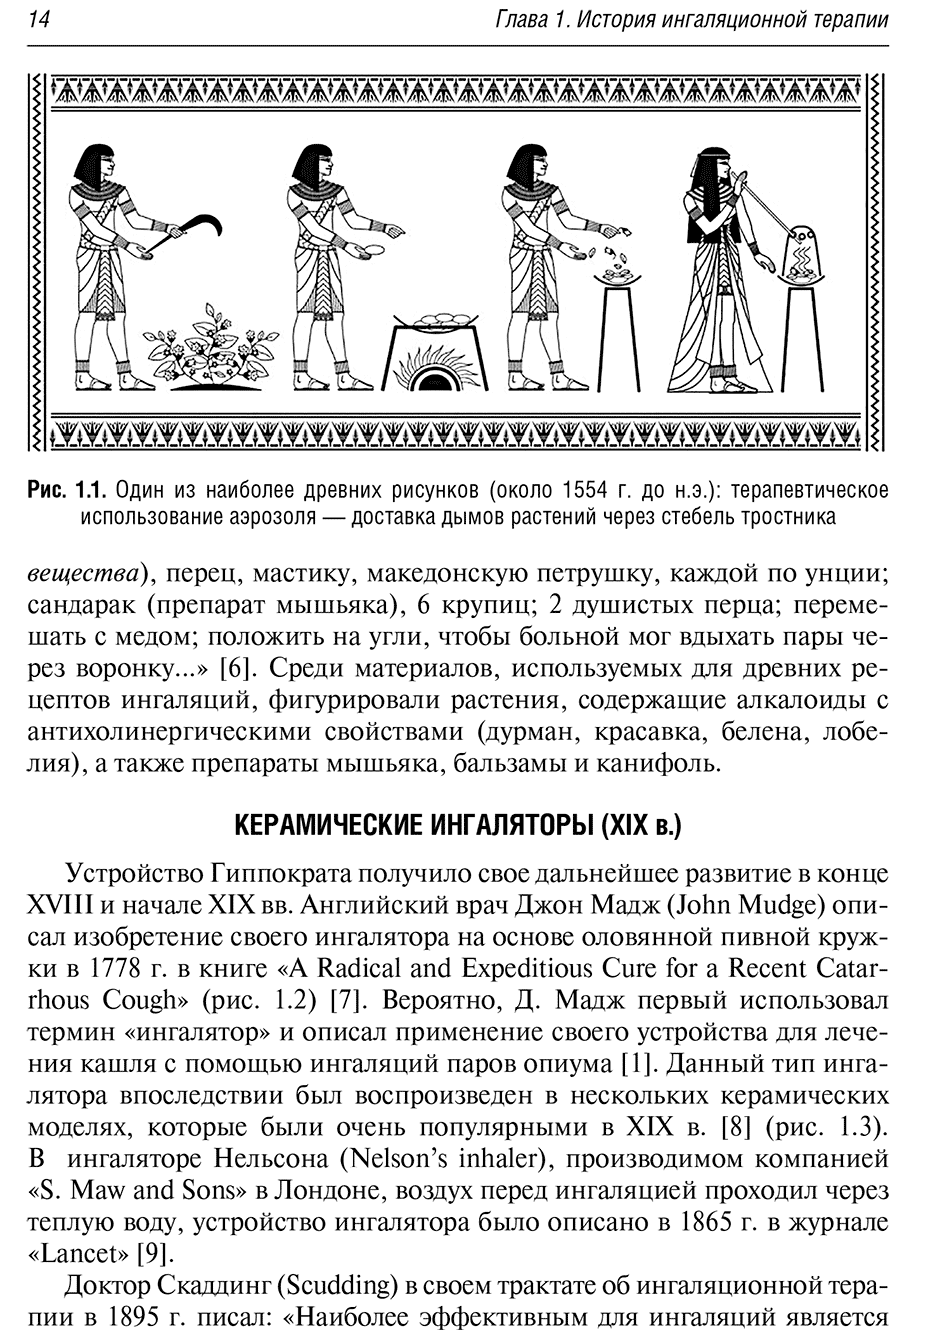 Рис. 1.1. Один из наиболее древних рисунков (около 1554 г. до н.э.)